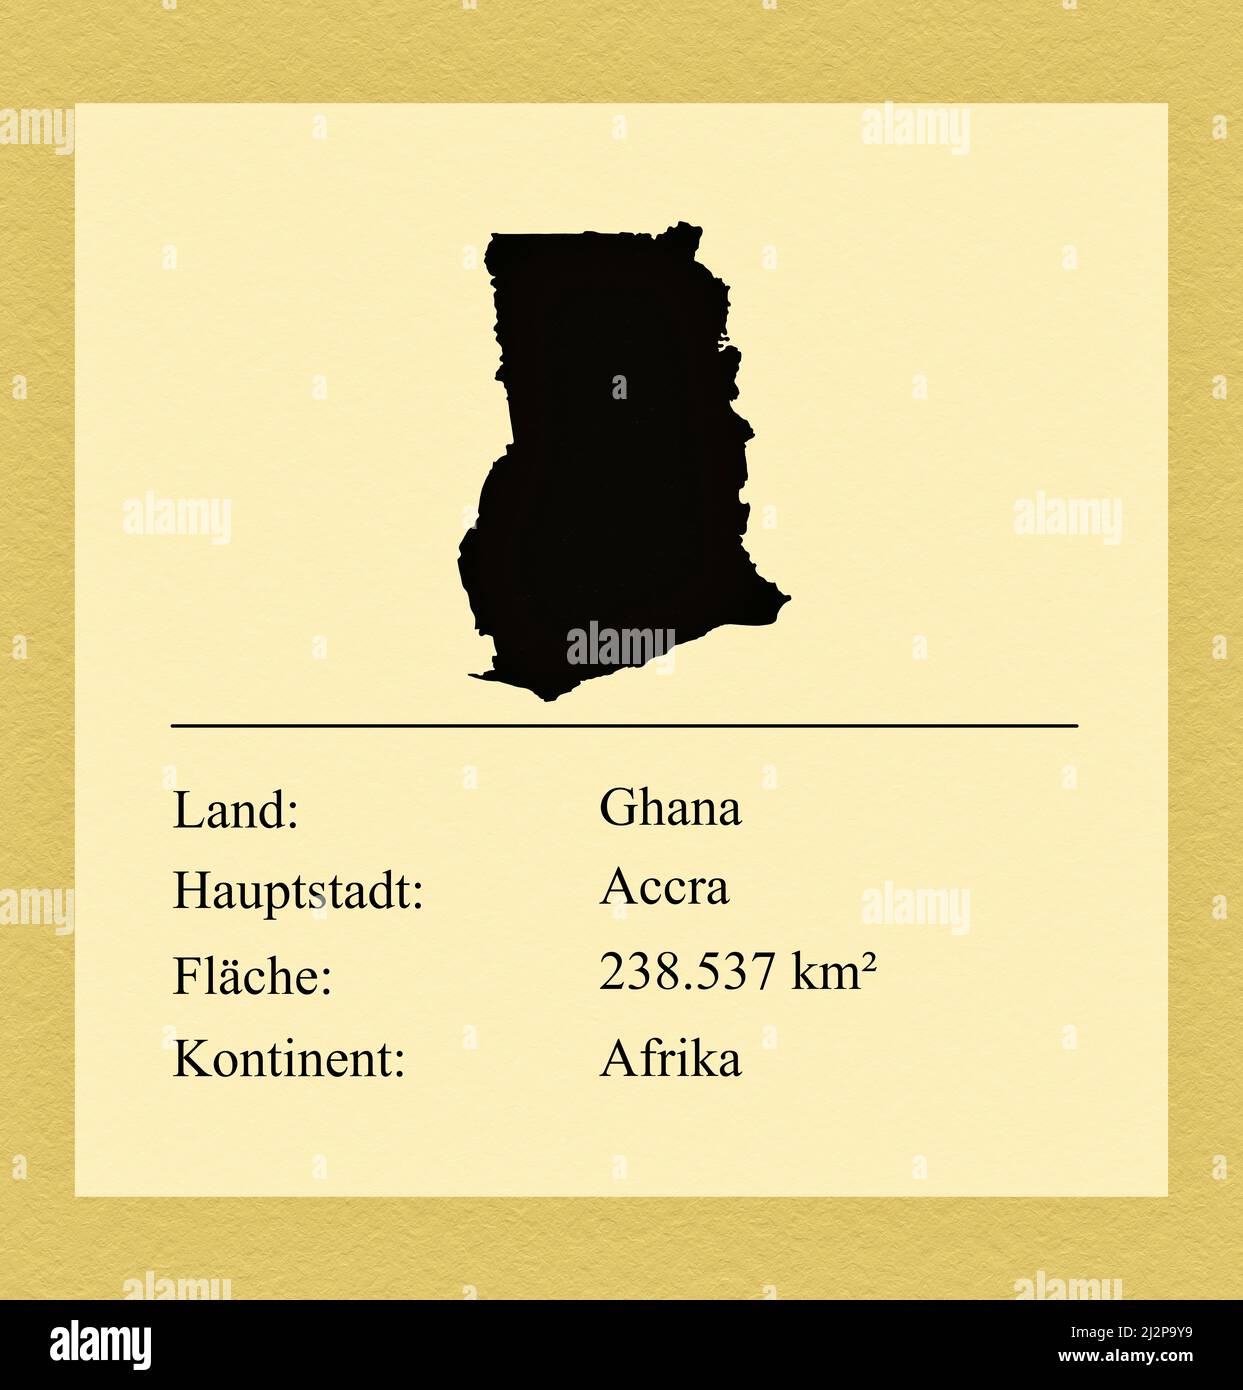 Umrisse des Landes Ghana, darunter ein kleiner Steckbrief mit Ländernamen, Hauptstadt, Fläche und Kontinent Foto Stock